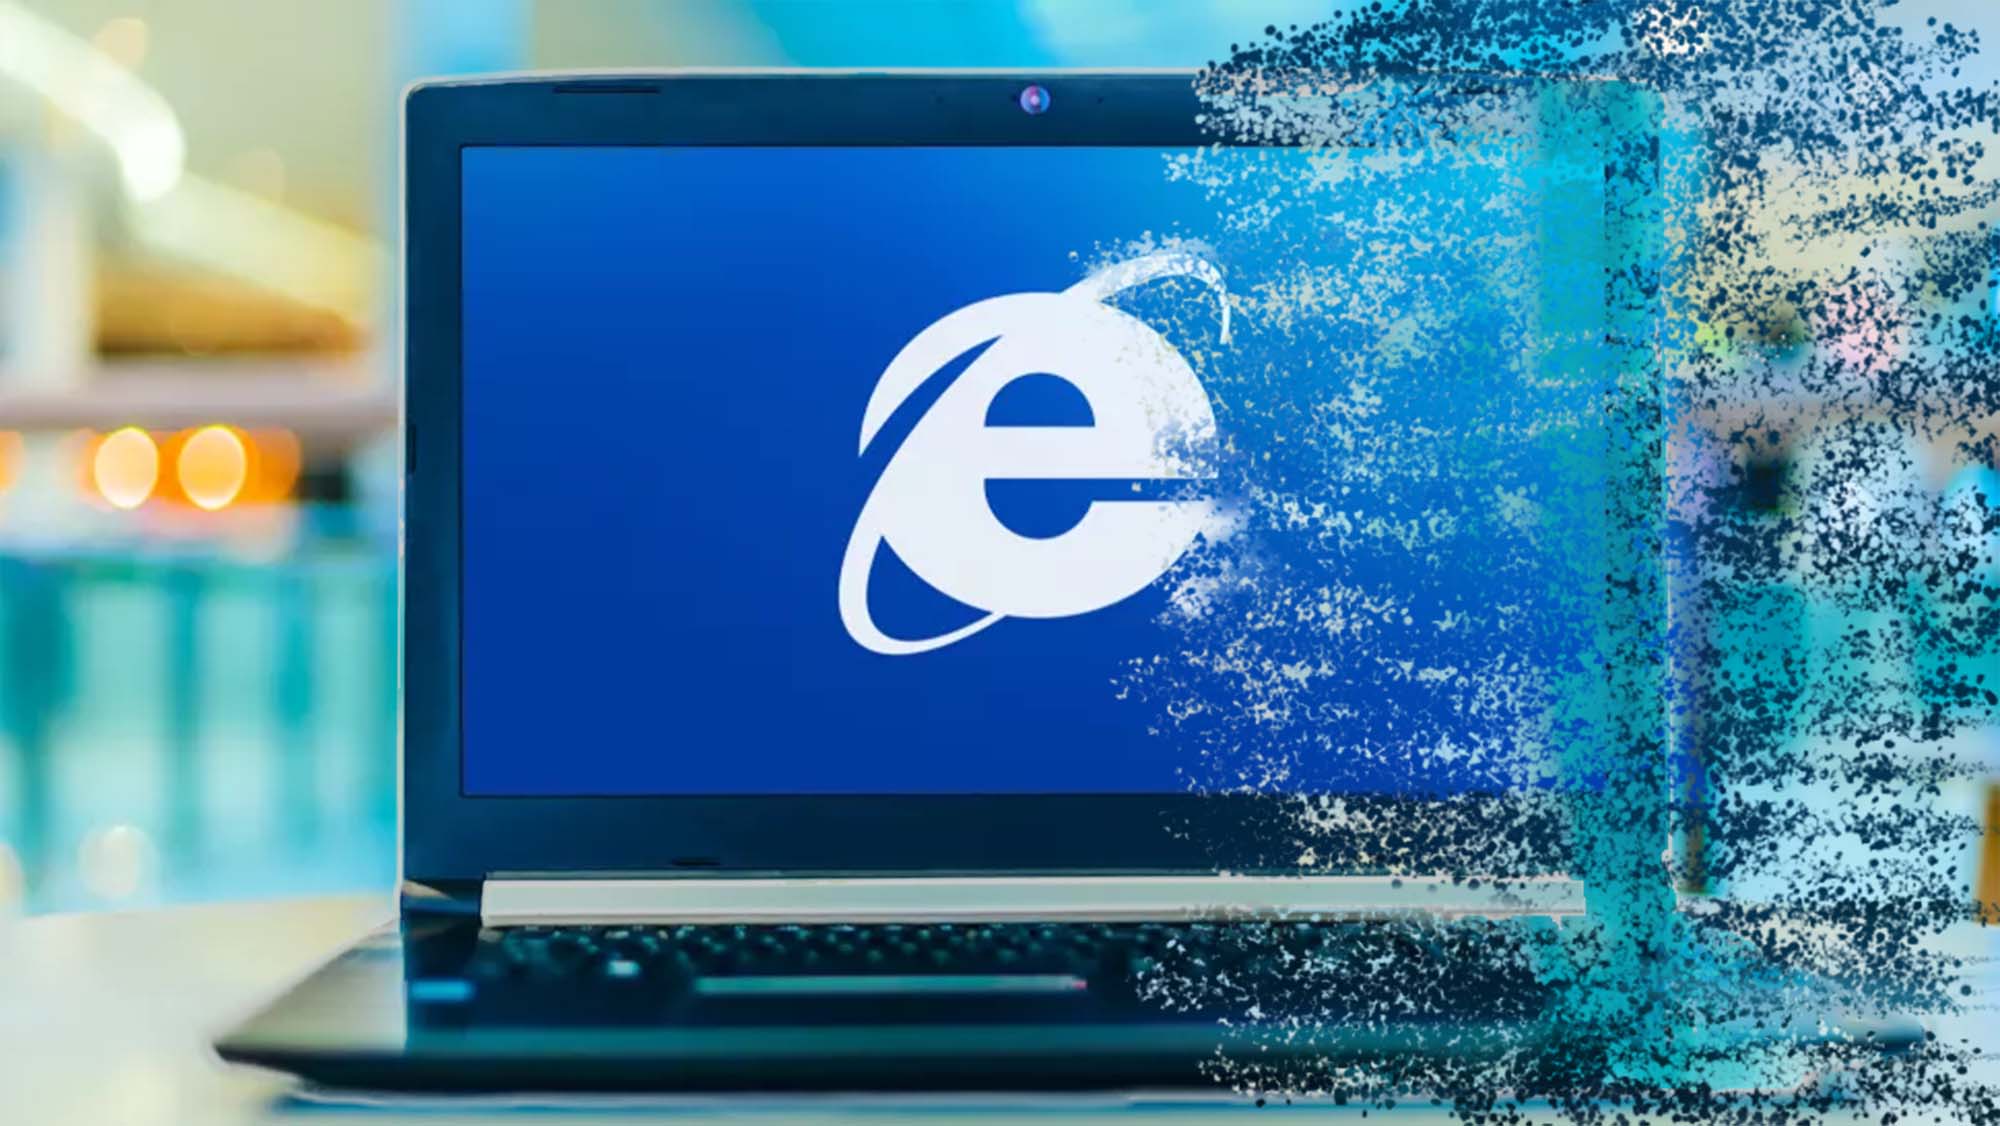 До свидания, Internet Explorer. Спасибо за воспоминания (и вредоносное ПО)